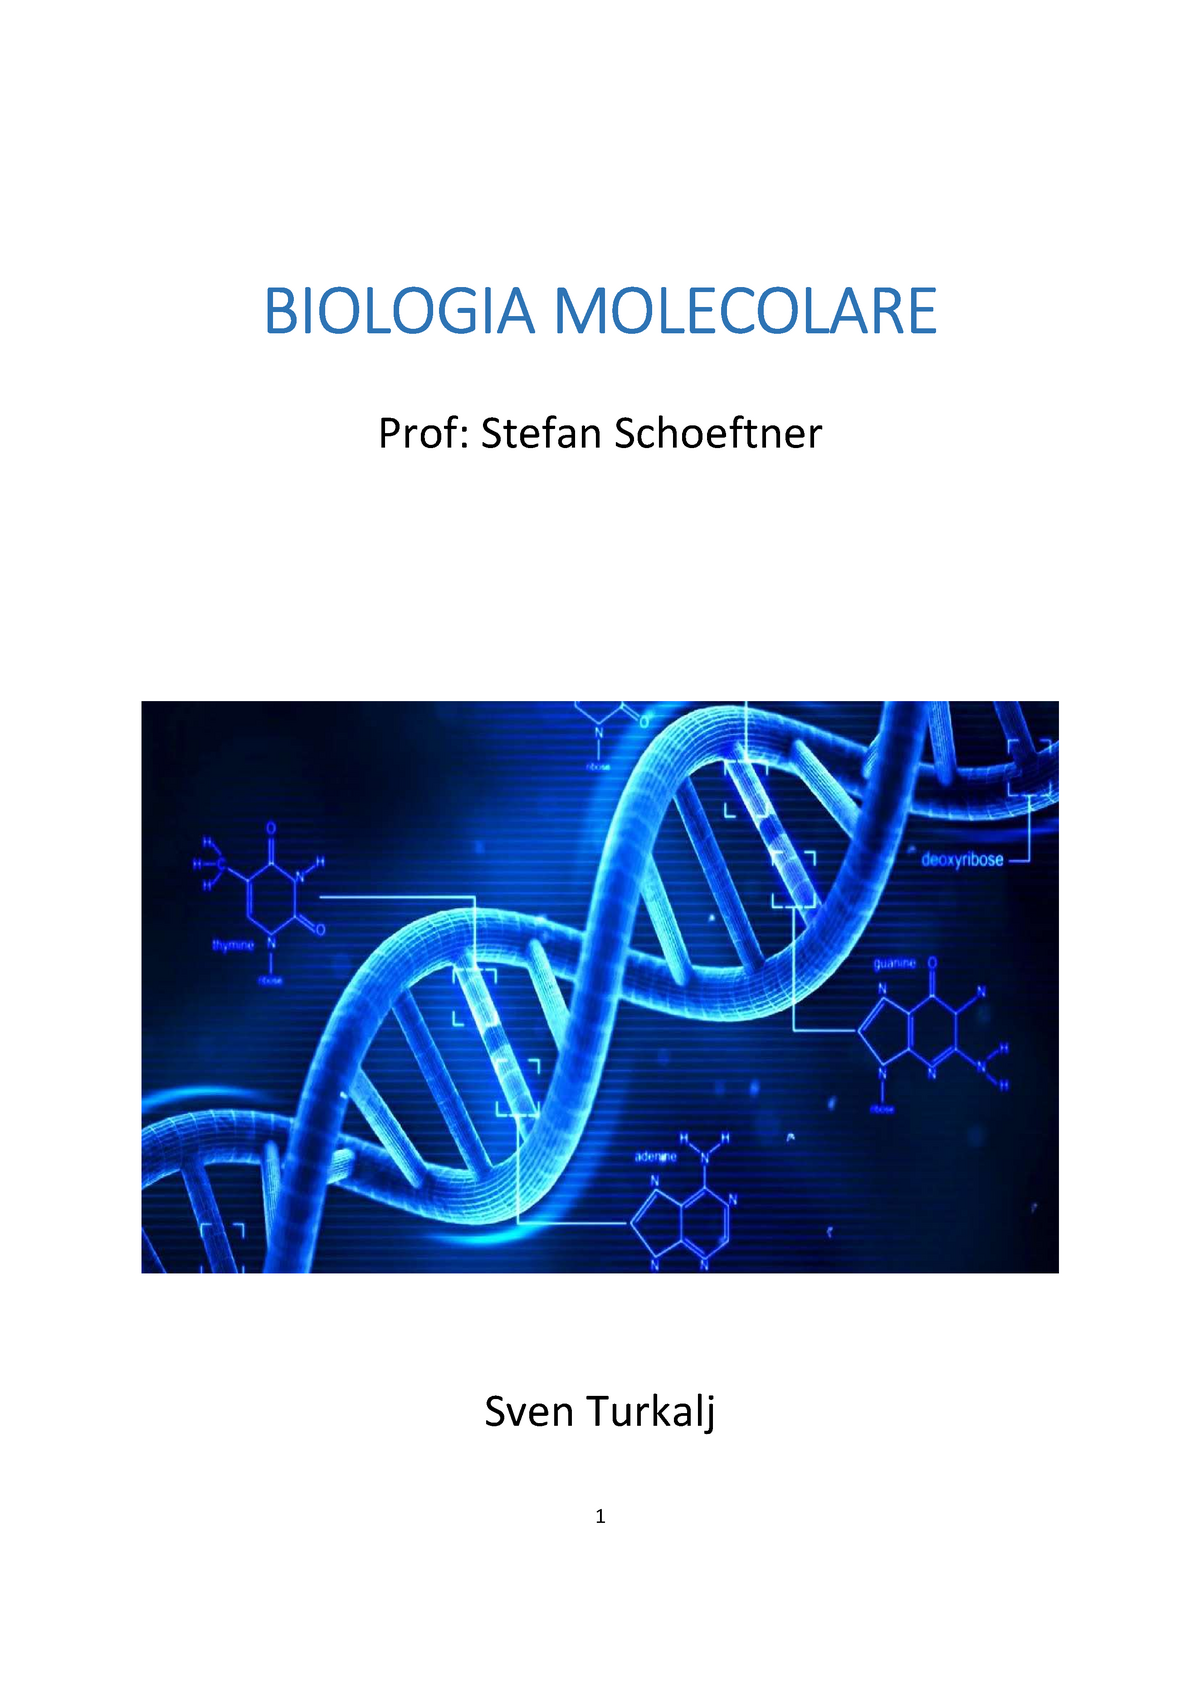 biologia cellulare e molecolare karp pdf files